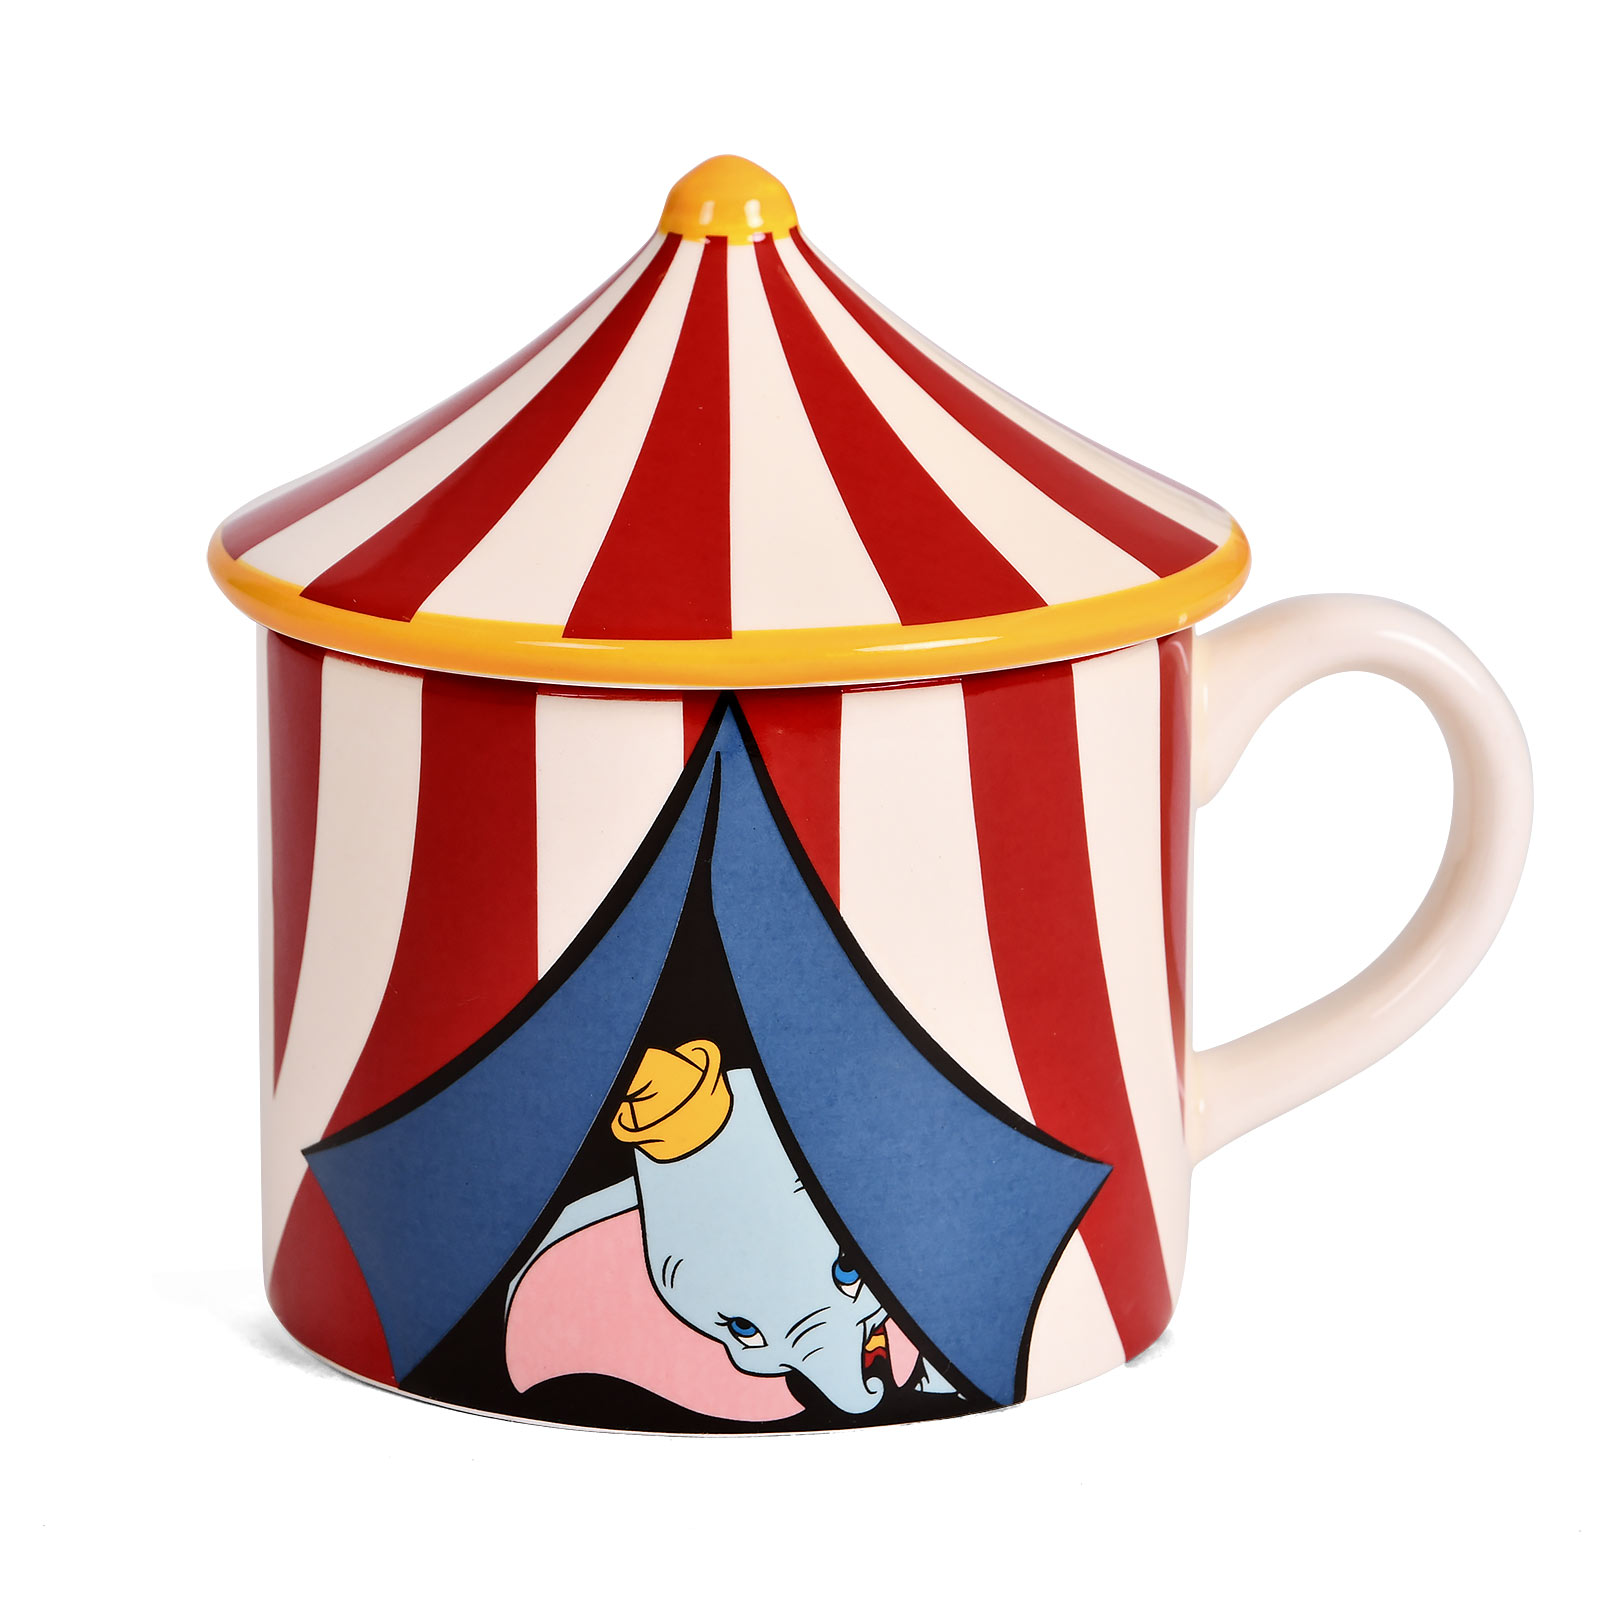 Dumbo - Circus Tent 3D Mok met Deksel